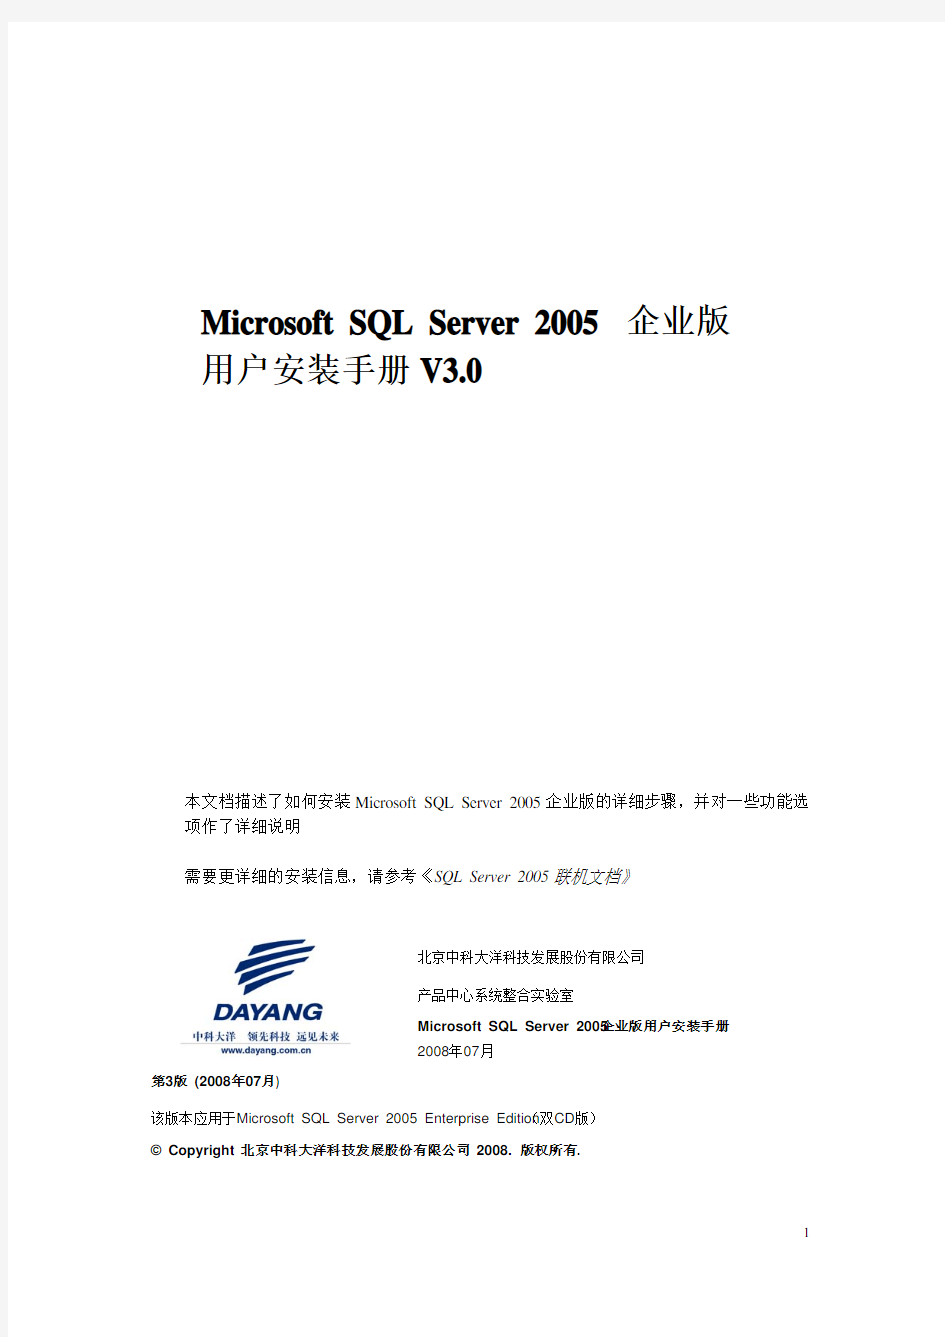 Microsoft SQL Server 2005 企业版用户安装手册(第三版)